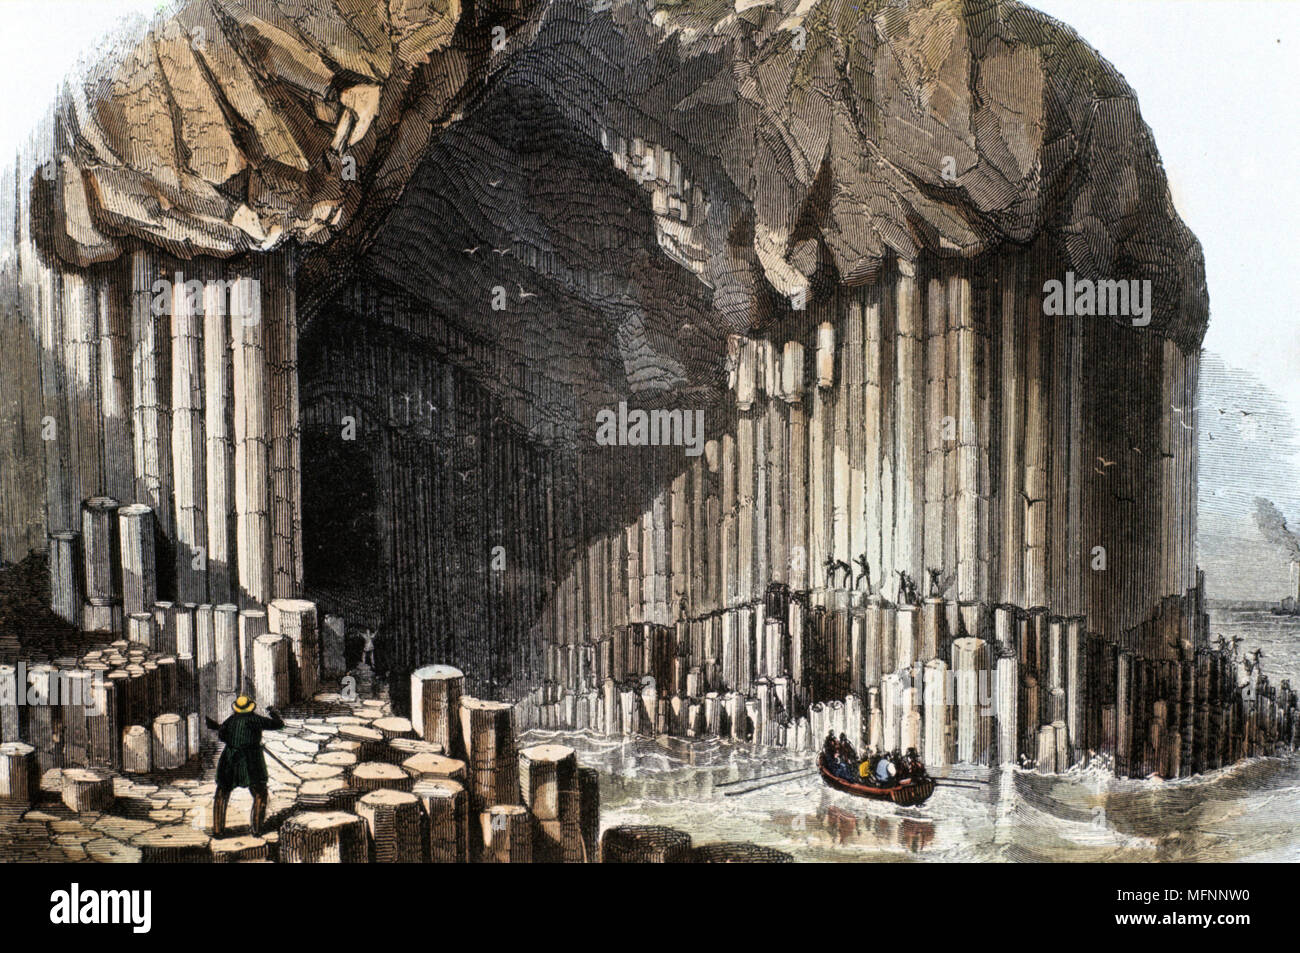 Fingal's Cave, die Höhlen in den Basalt Stapel bekannt an der südwestlichen Küste von Staffa, Inneren Hebriden in Schottland. 69 Meter lang und 12 Meter breit mit einem Dach Arch ca. 22 Meter hoch Dieses natürliche Phänomen war die Inspiration für Felix Mendelssohn (1809-1847) Ouvertüre "Die Hebriden". Hand - farbige Gravur veröffentlicht 1849. Stockfoto